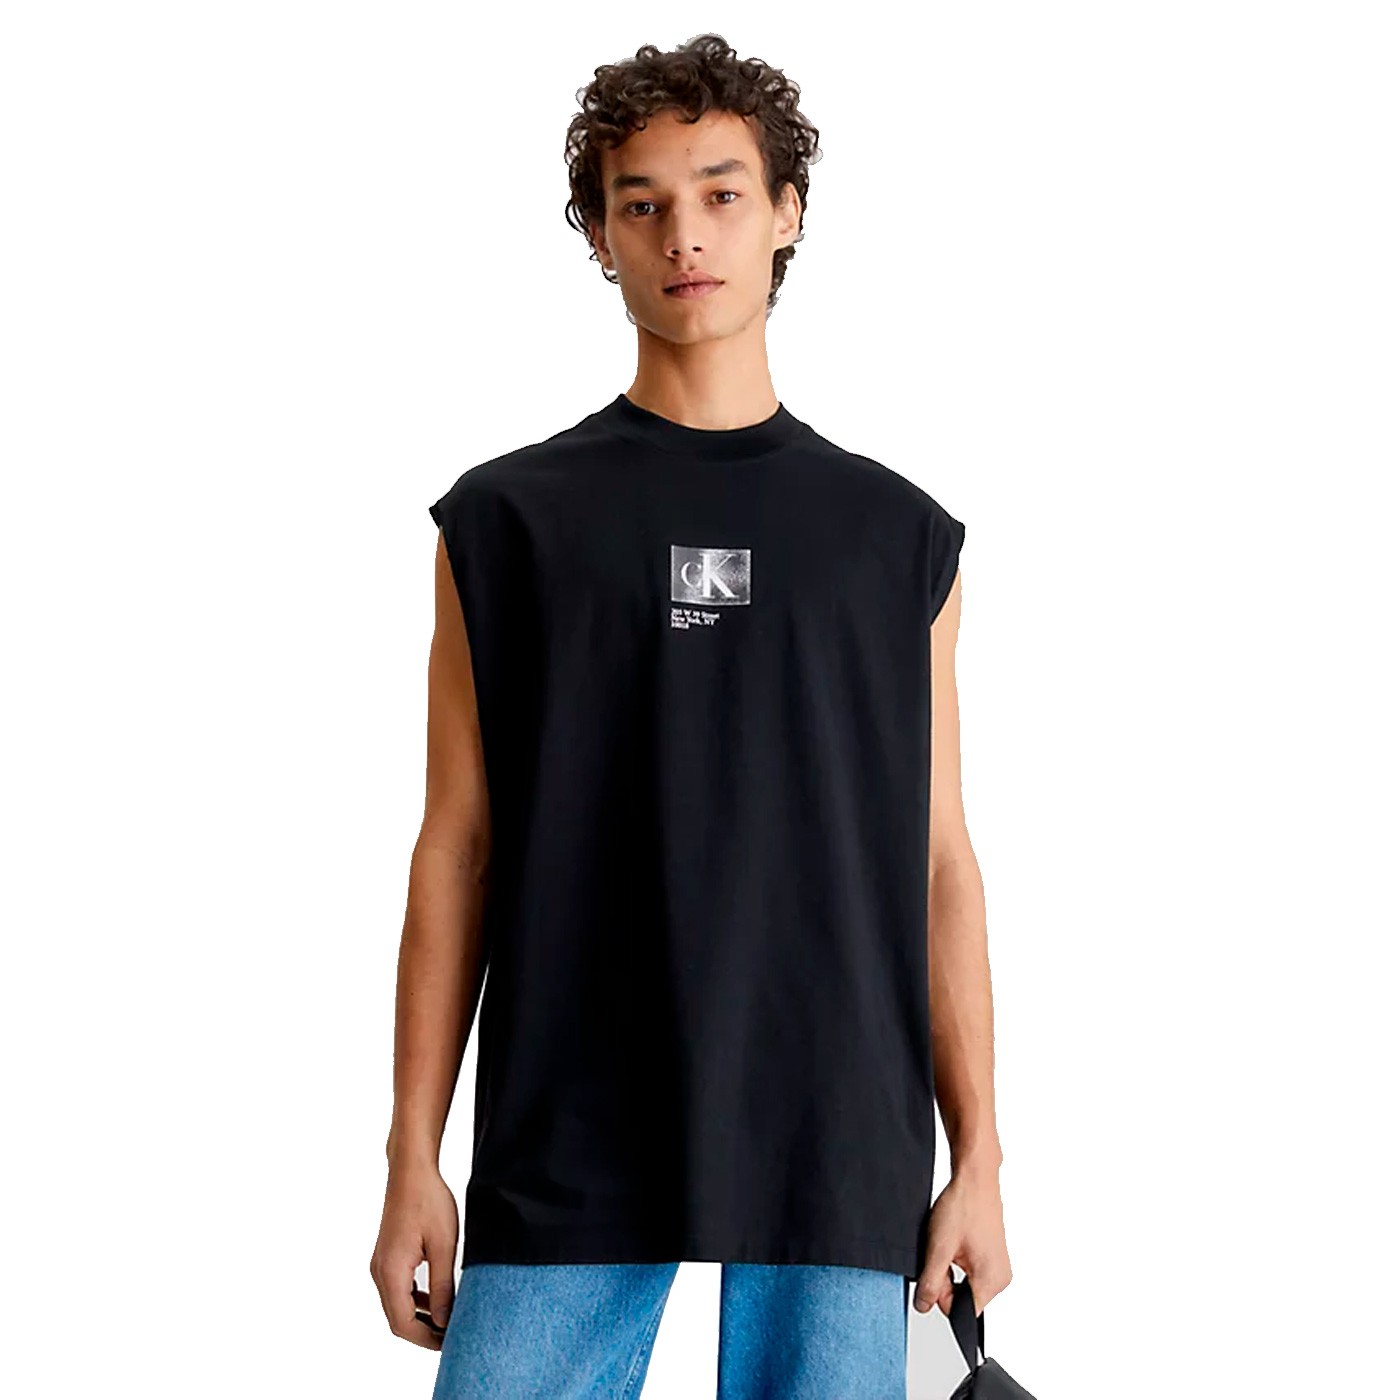 hotel Dispersión Determinar con precisión Calvin Klein - Camiseta para Hombre Negra - Sin mangas Box Sleeveless Black